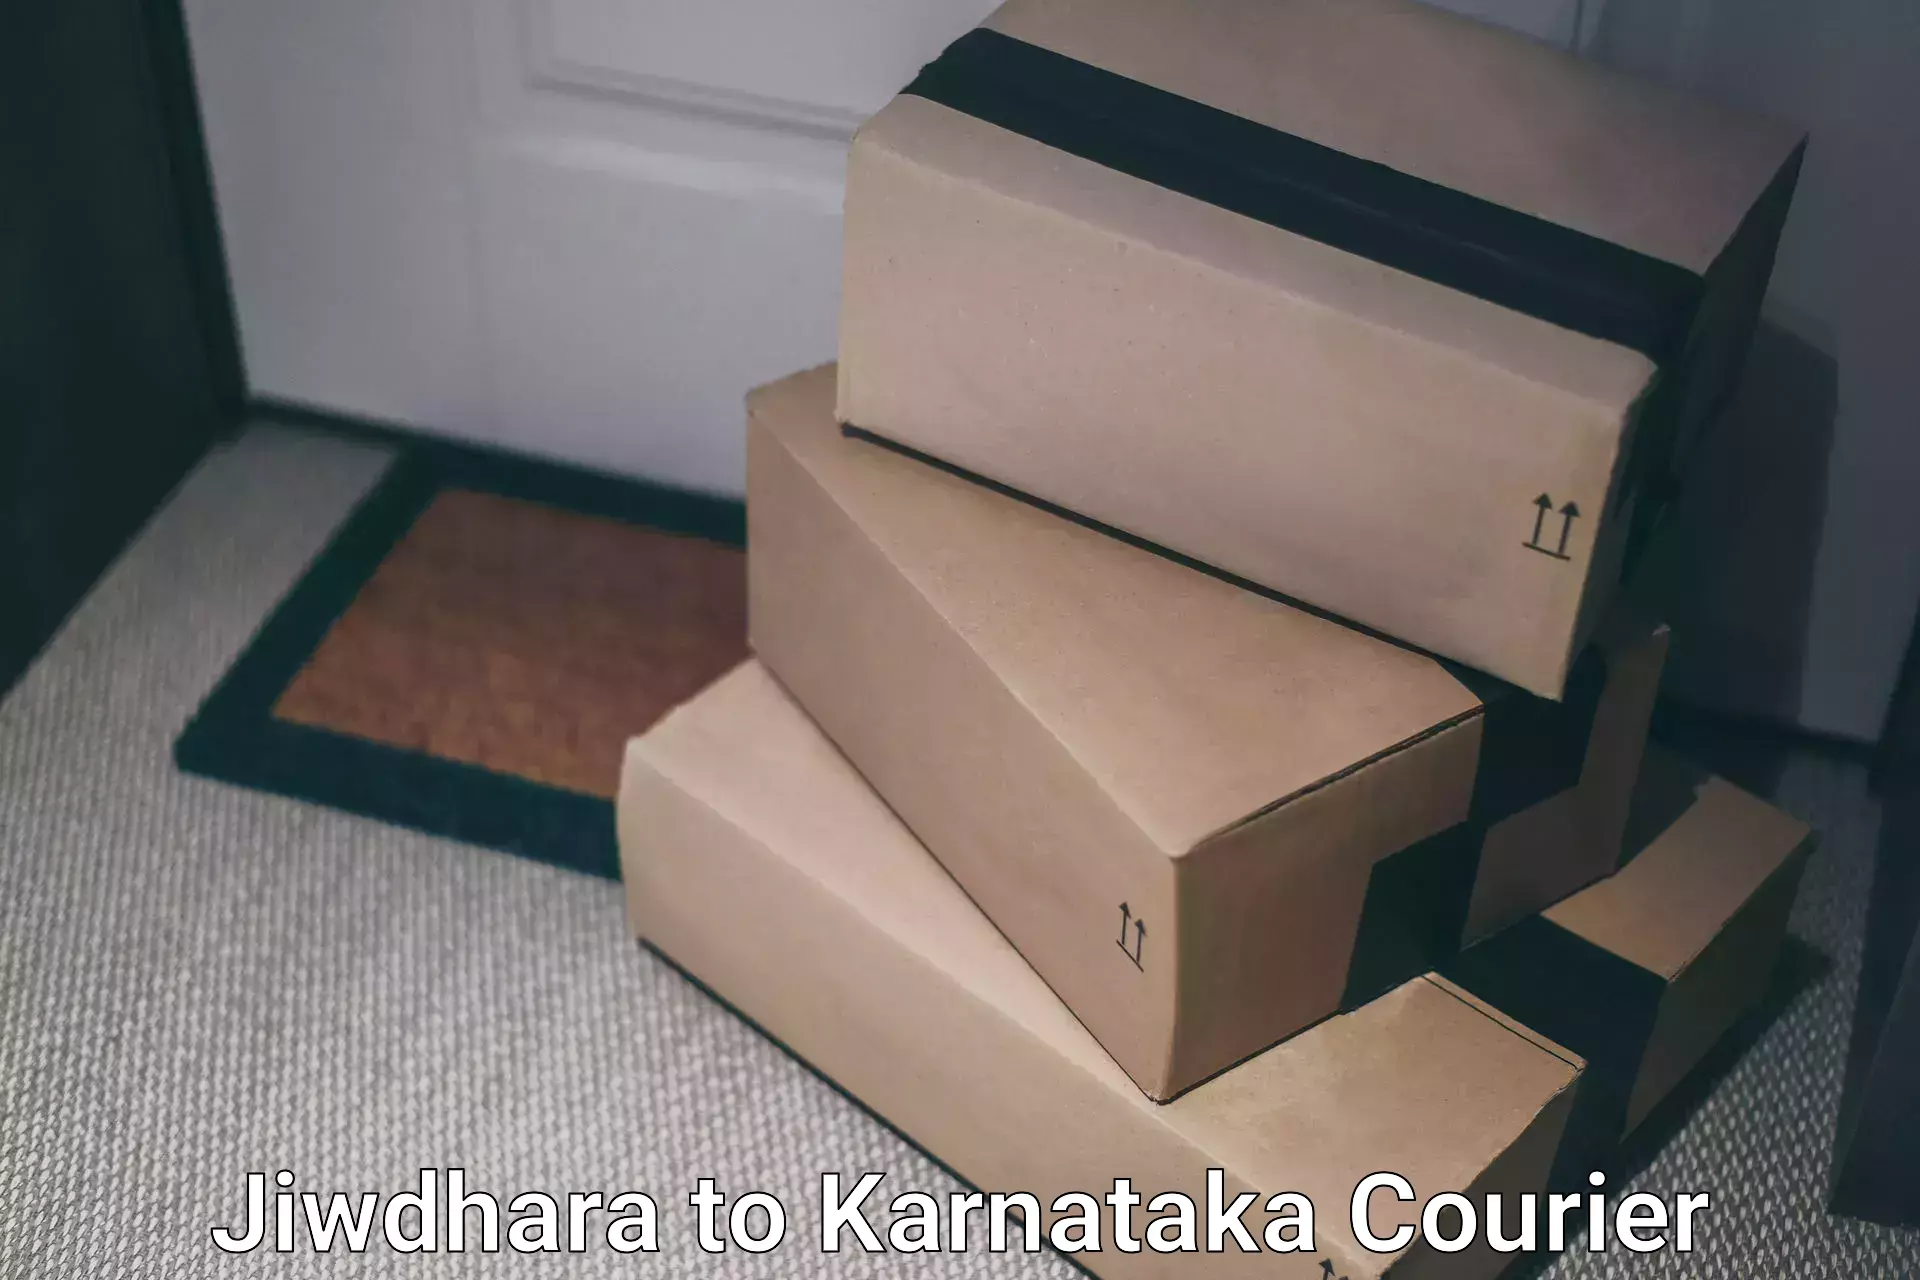 Modern courier technology Jiwdhara to Madikeri